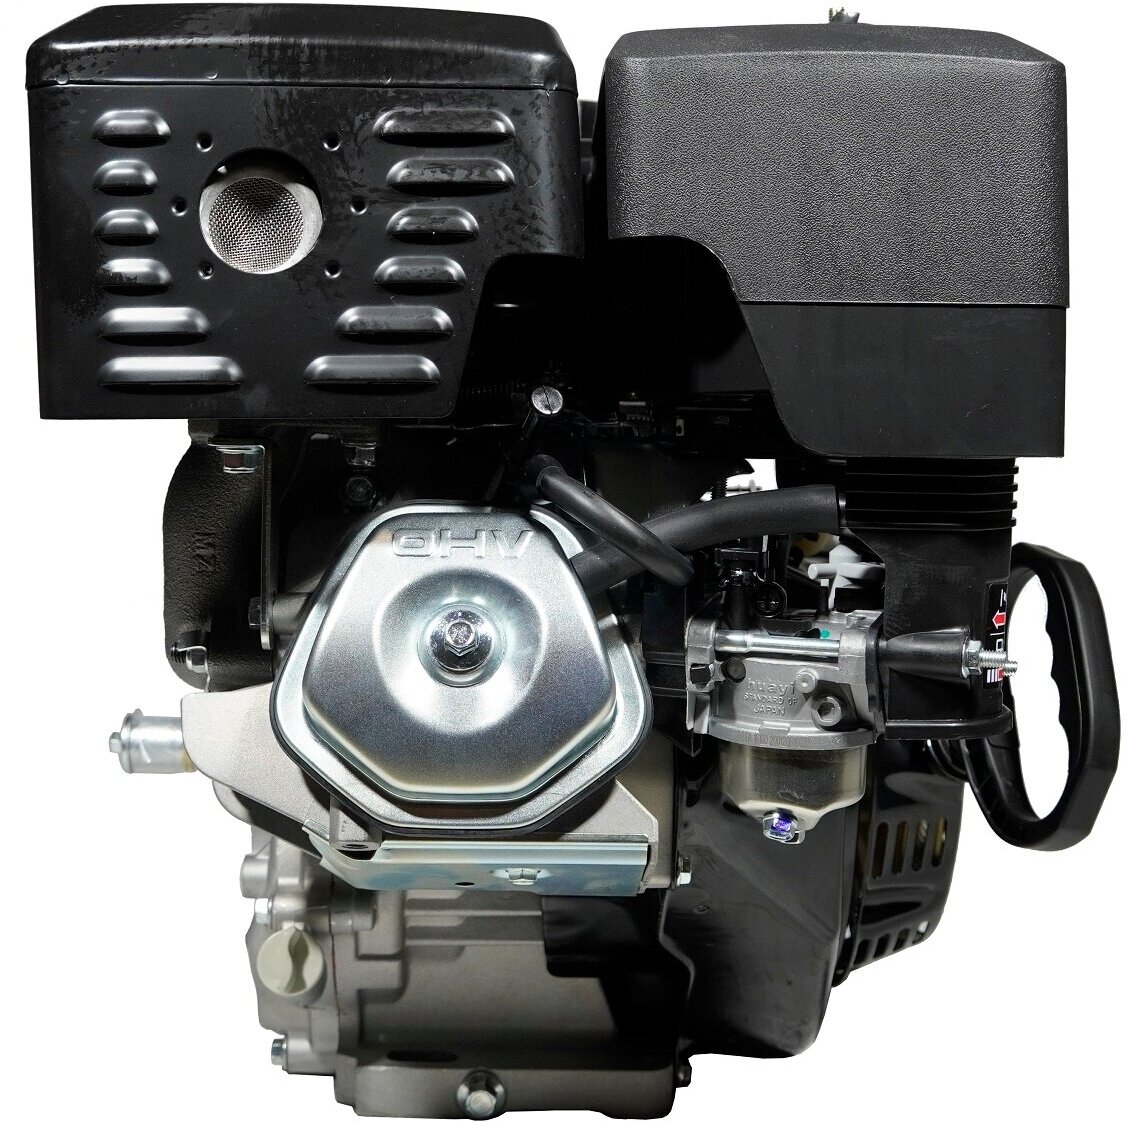 Бензиновый двигатель LIFAN 190FD D25 15 лс